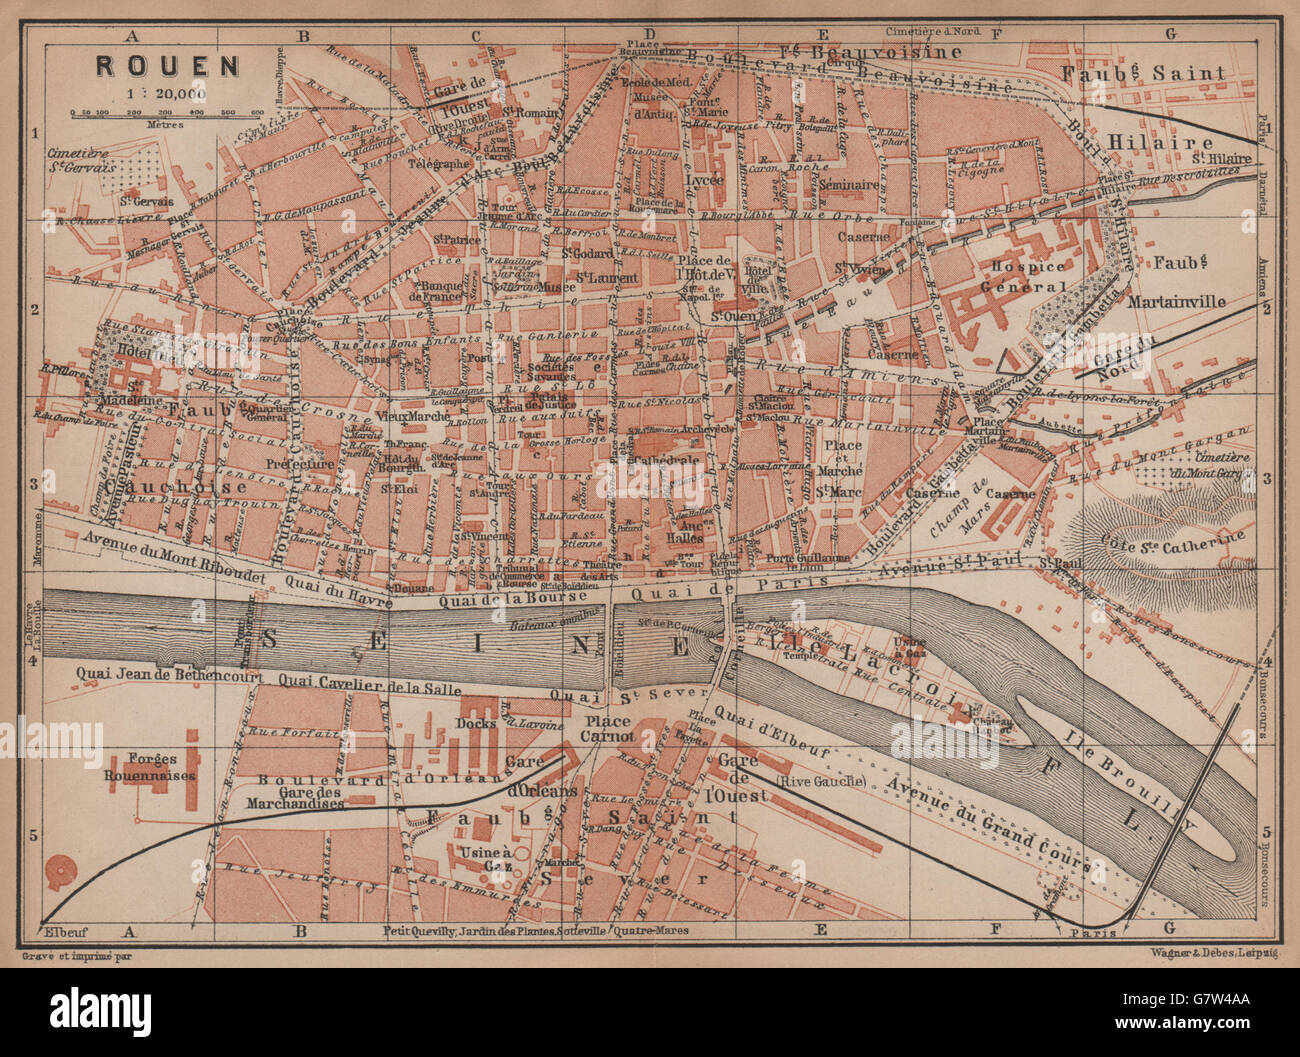 ROUEN antique town city plan de la ville. Seine-Maritime carte, 1899 old map Stock Photo